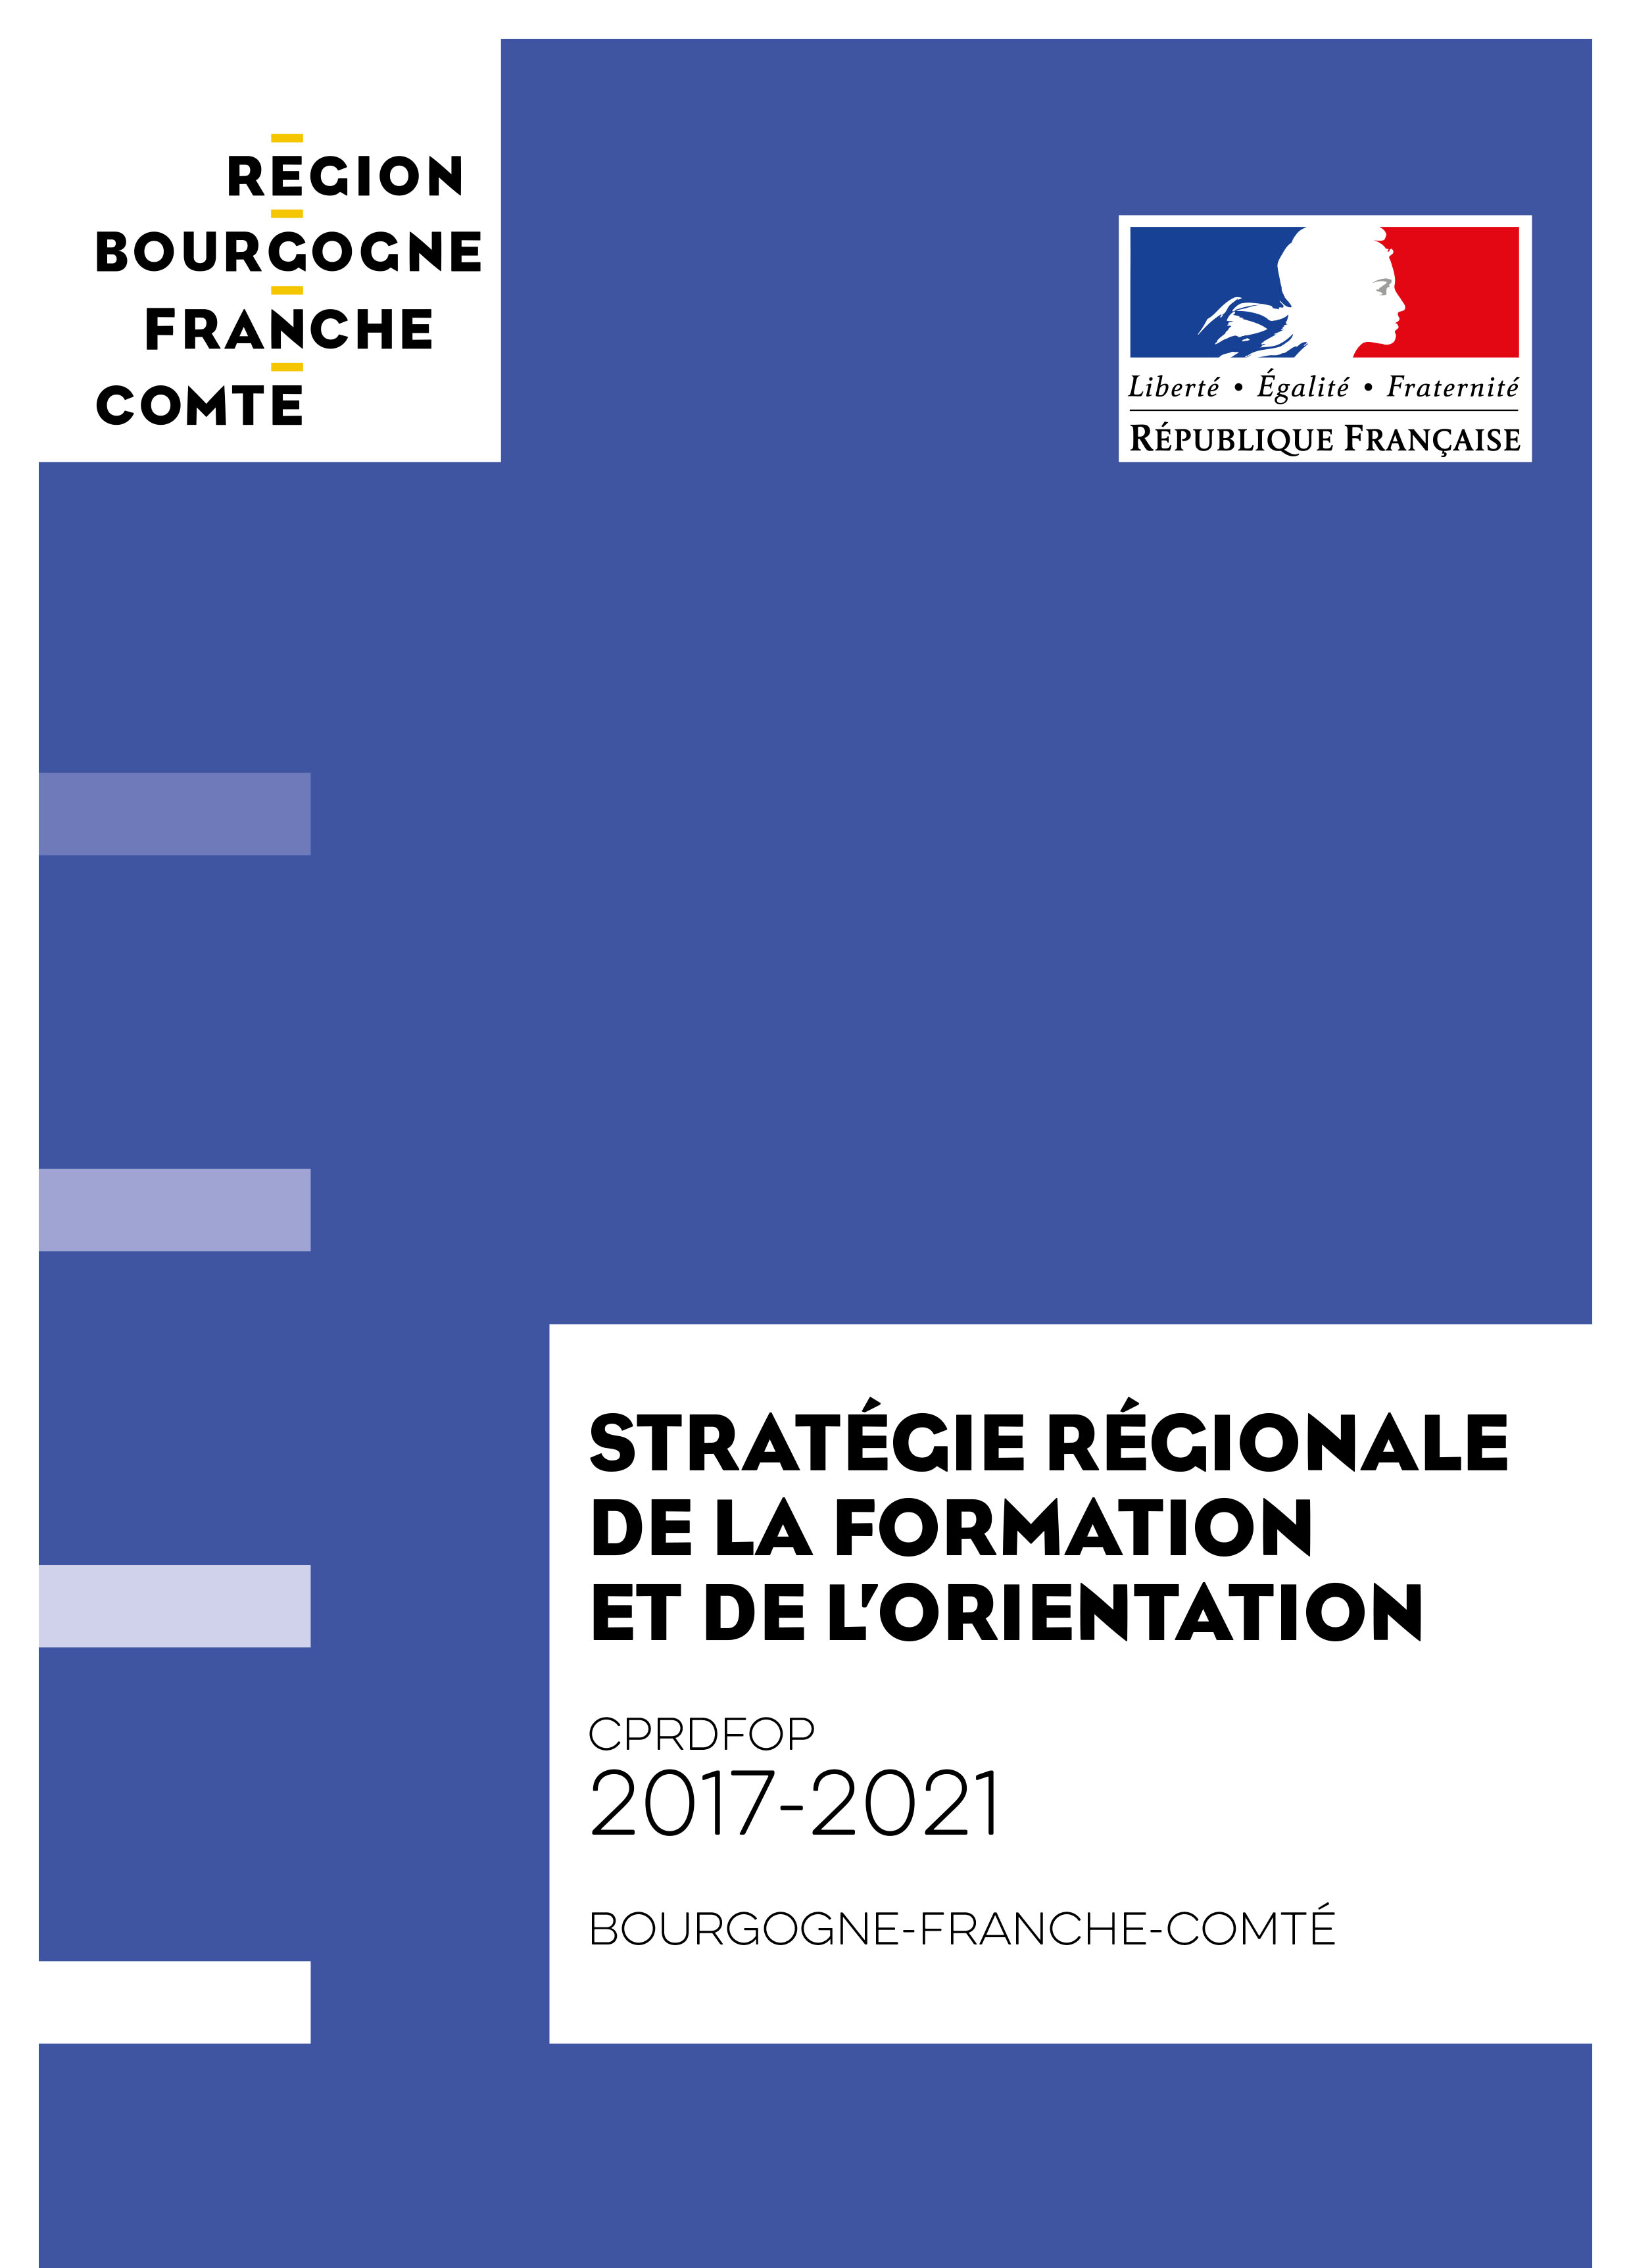 Stratégie régionale de la formation et de l’orientation - CPRDFOP 2017-2021